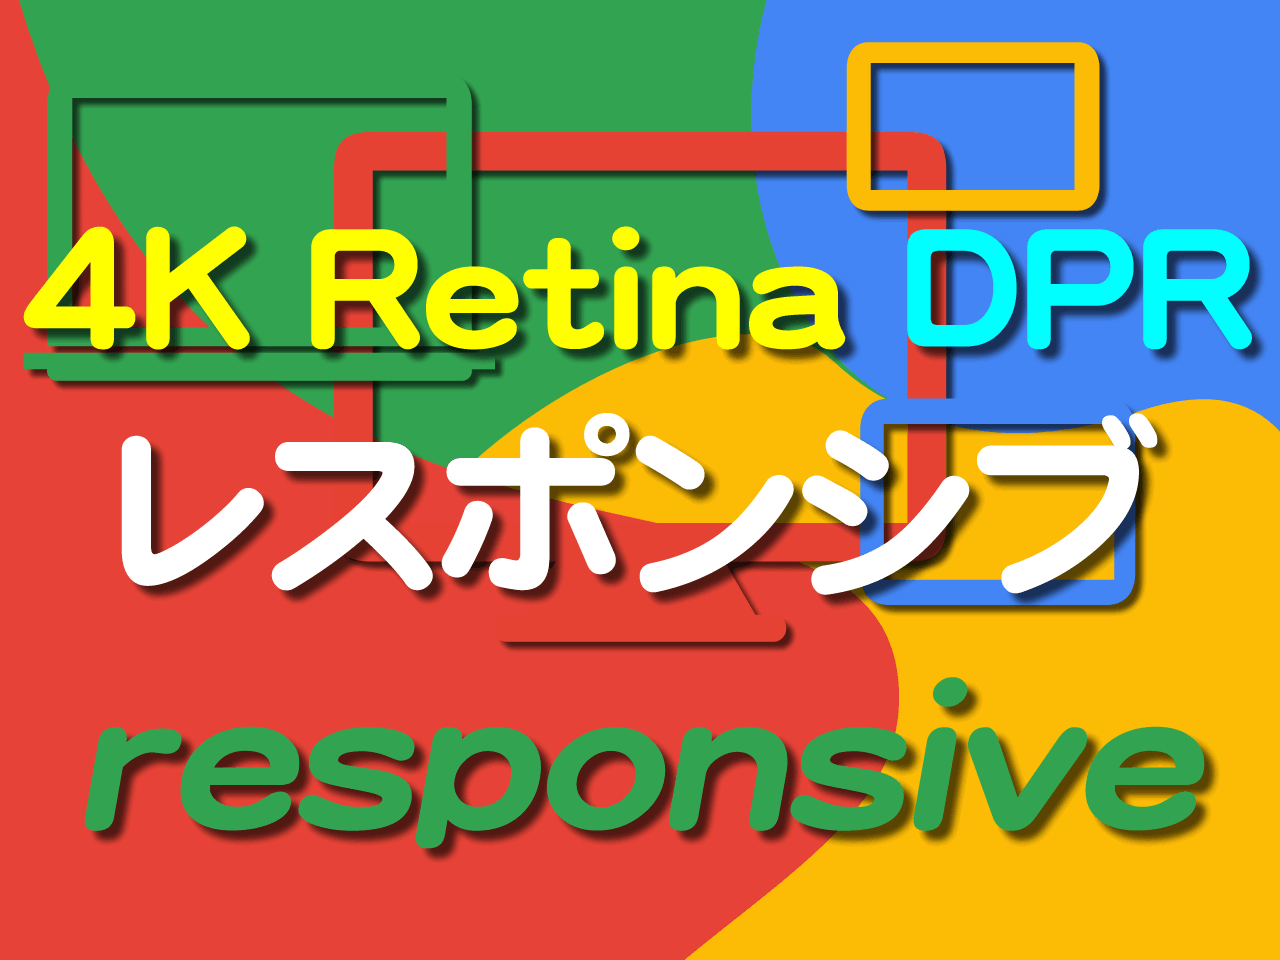 レスポンシブ問題 CSSピクセルとデバイスピクセル DPR(Device Pixel Ratio)とモバイルファースト Design